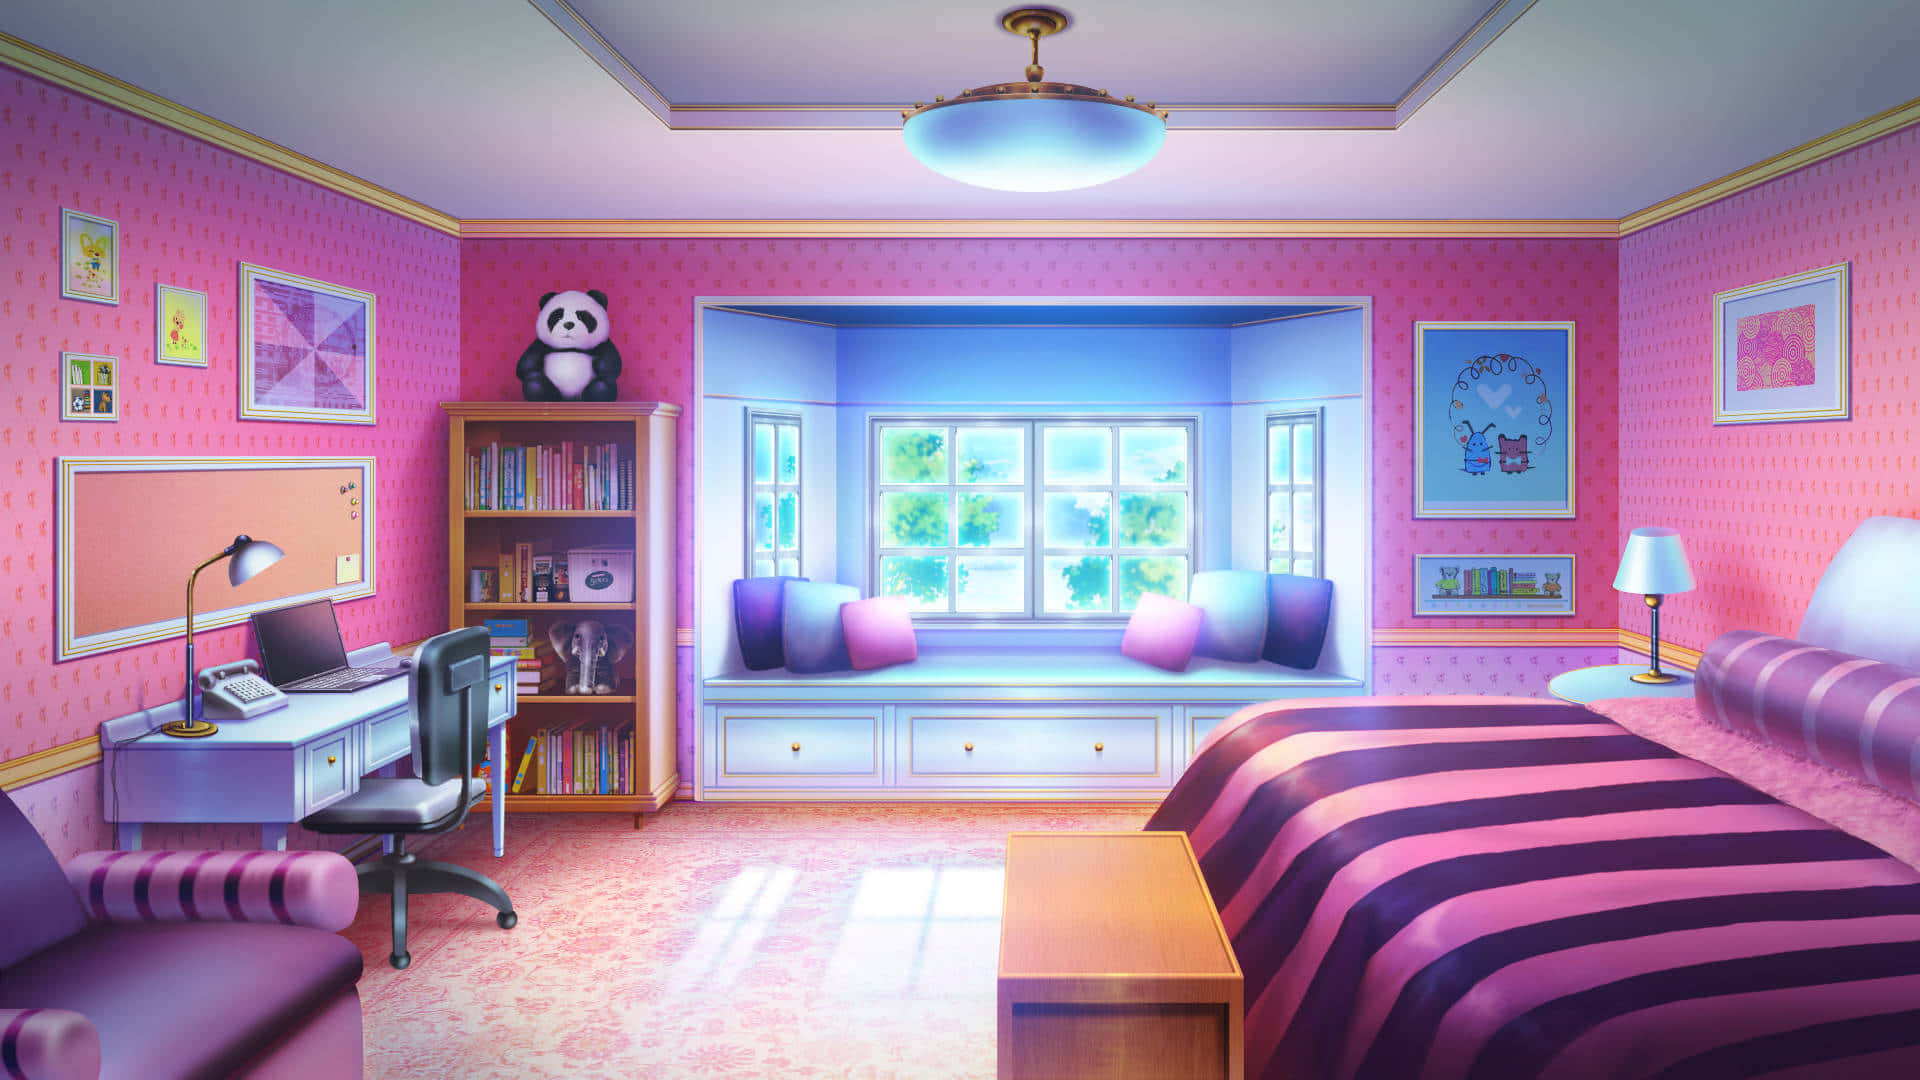 Verwandelnsie Ihren Raum In Eine Bunte Anime-traumlandschaft.